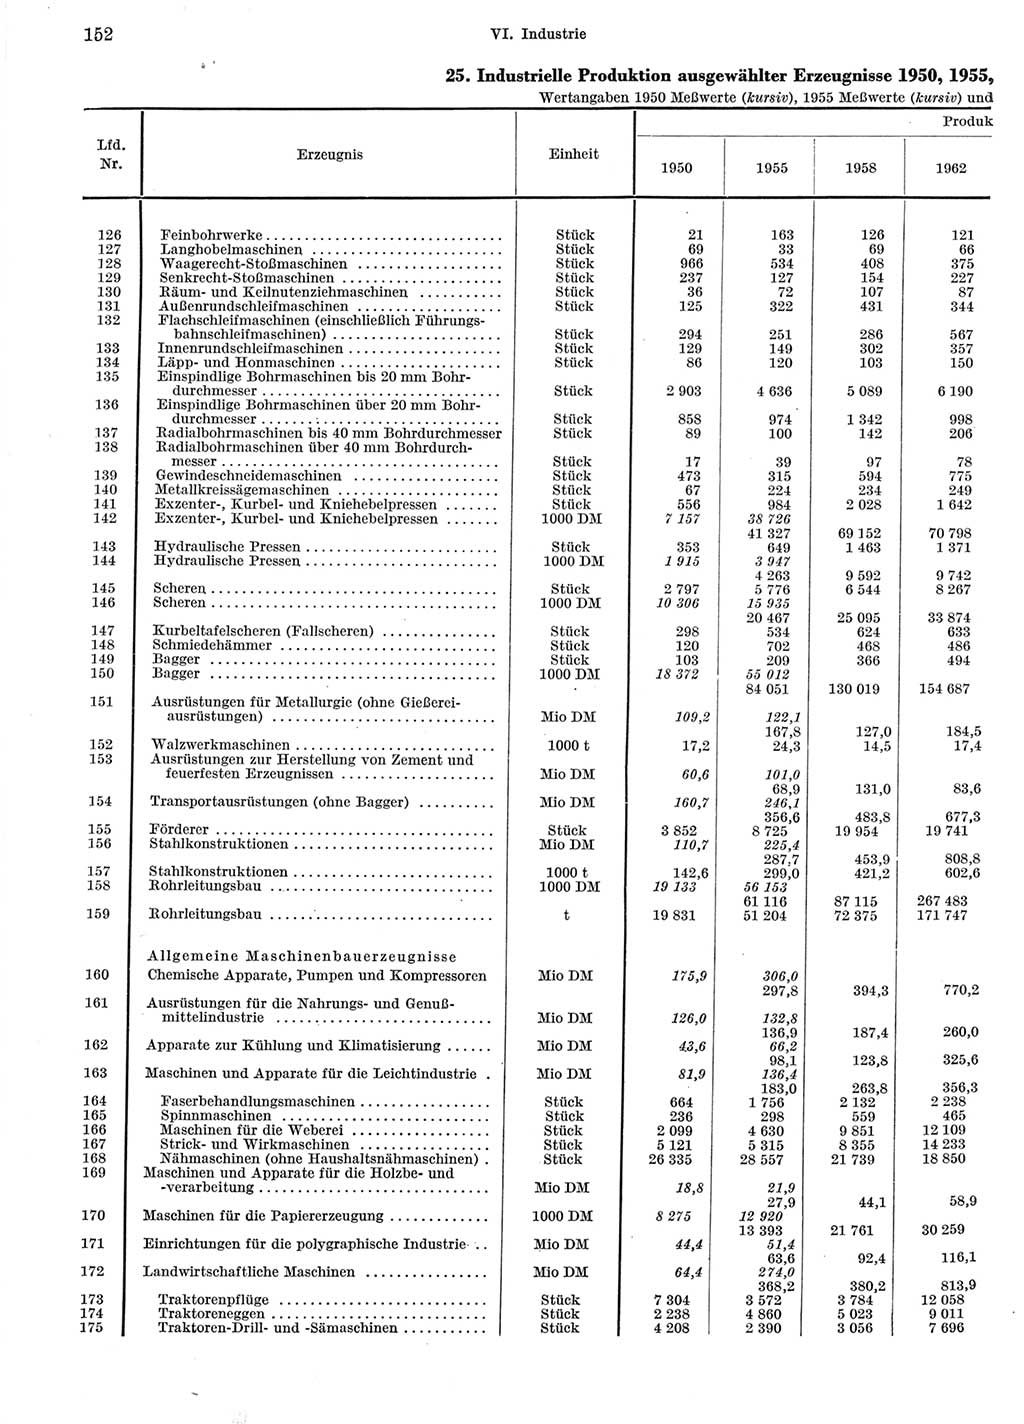 Statistisches Jahrbuch der Deutschen Demokratischen Republik (DDR) 1964, Seite 152 (Stat. Jb. DDR 1964, S. 152)